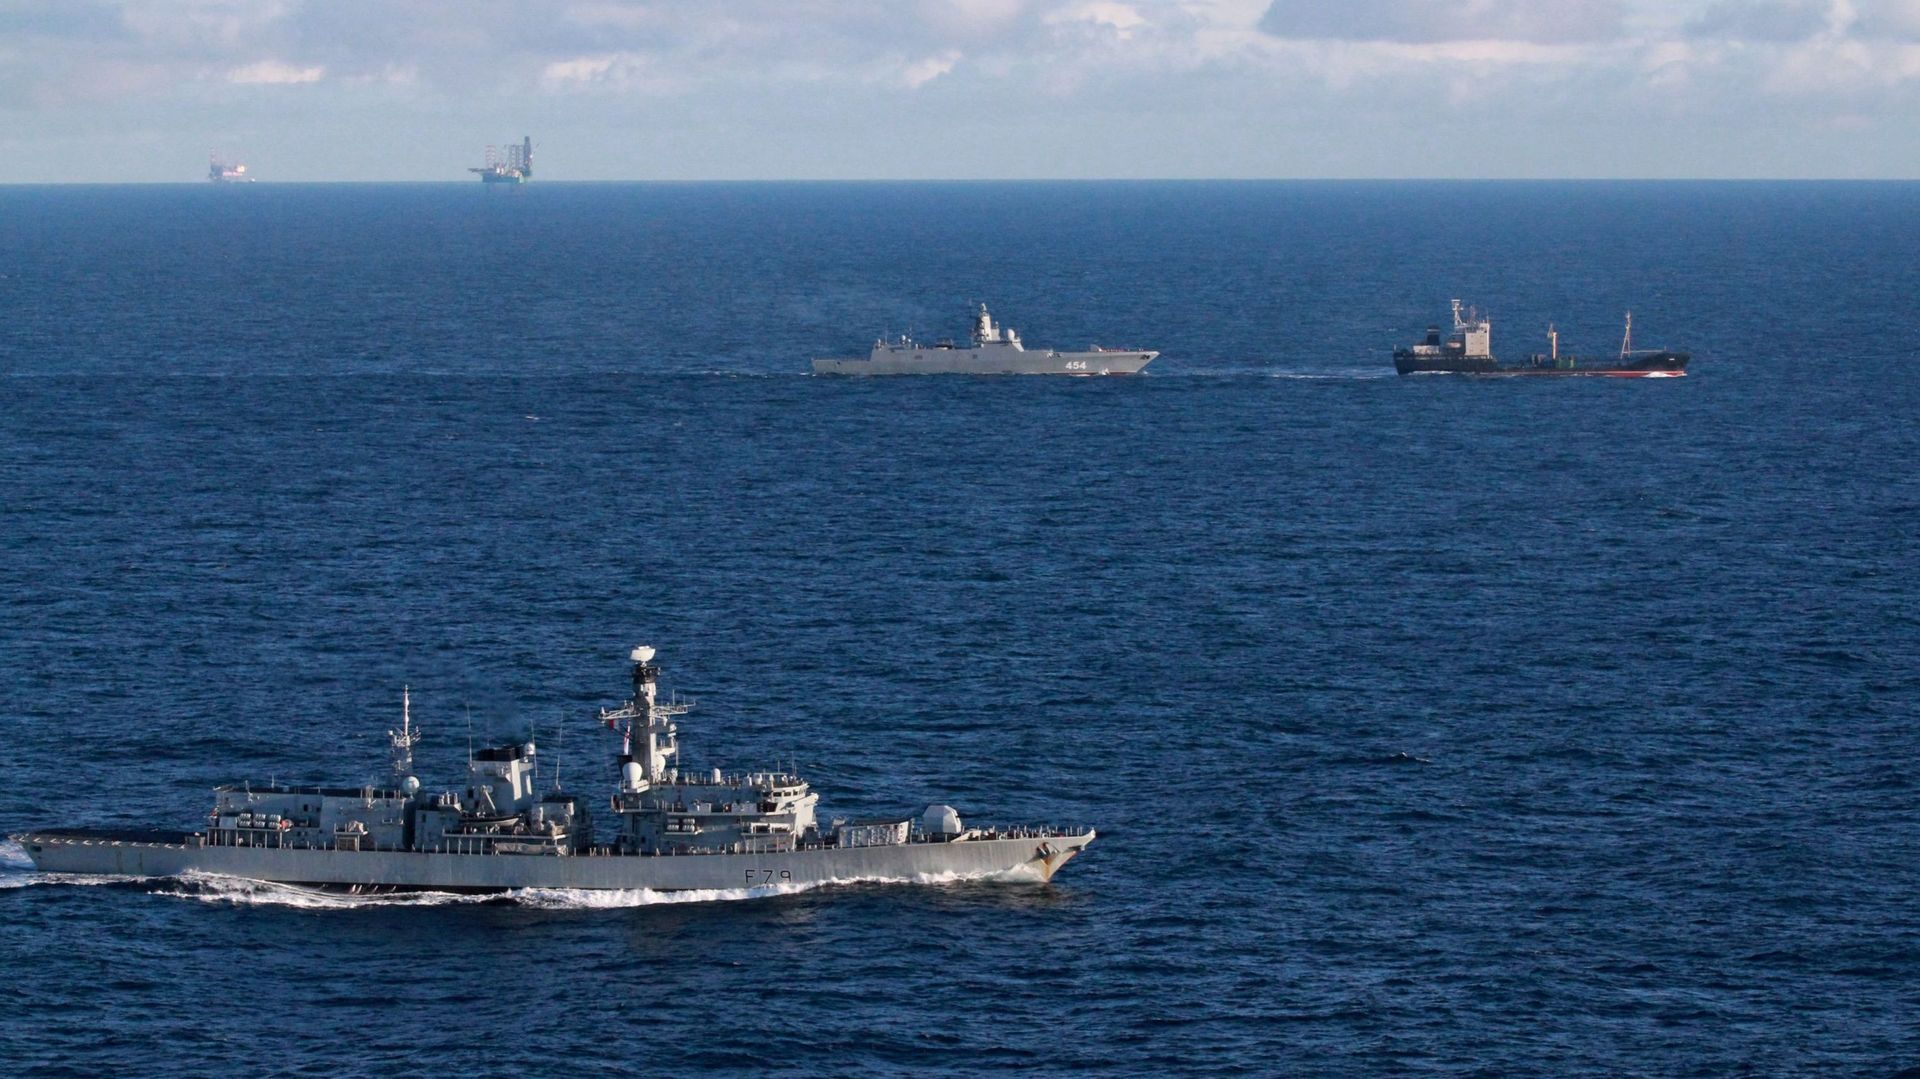 La frégate britannique de type 23 de la Royal Navy, le HMS Portland (à gauche), suit la frégate russe du projet 22350, l'Admiral Gorshkov (à droite), et le cargo Kama, alors qu'ils naviguent dans les eaux internationales de la mer du Nord, près du Royaume